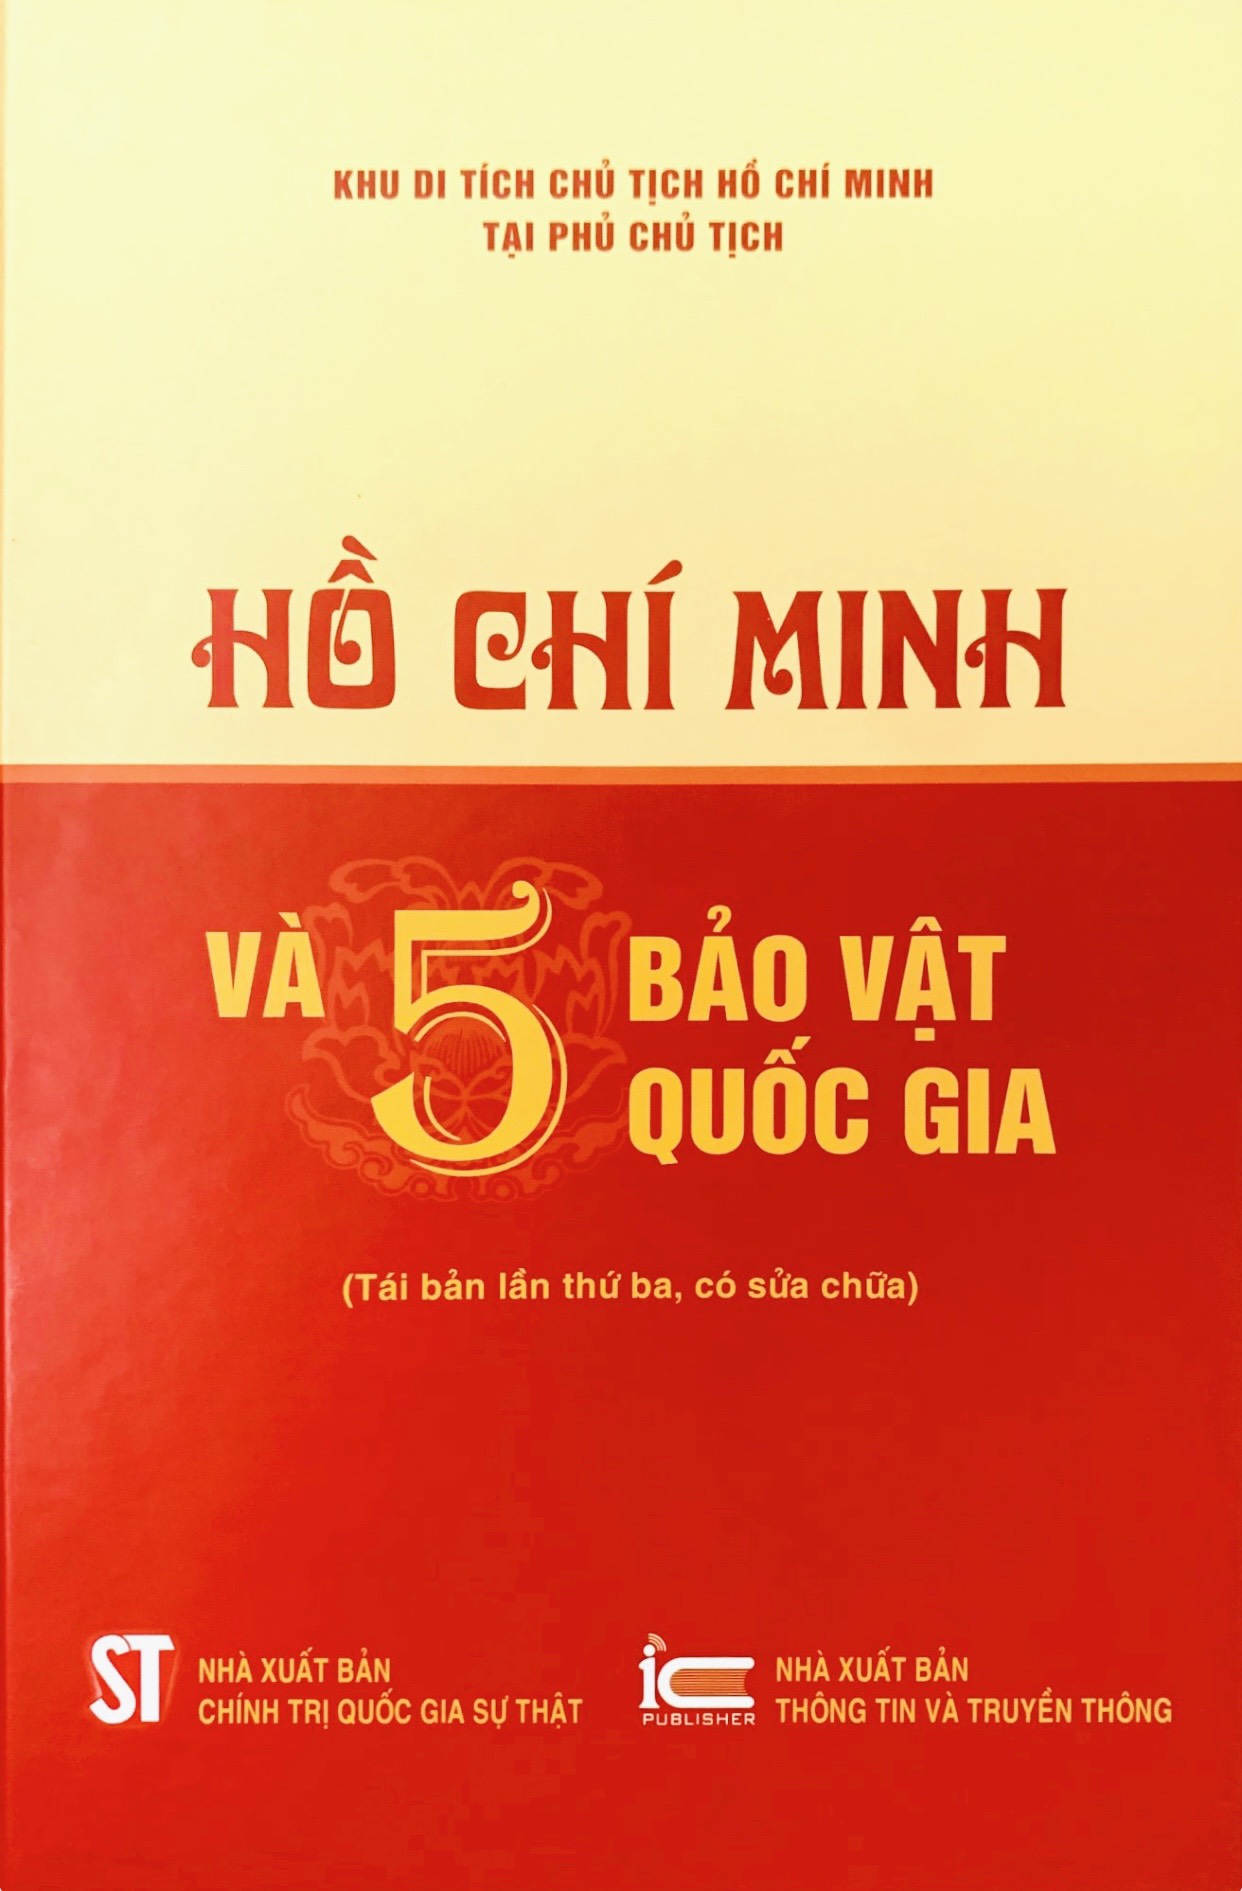 Hồ Chí Minh và 5 b.ảo v.ật q.uốc gi.a